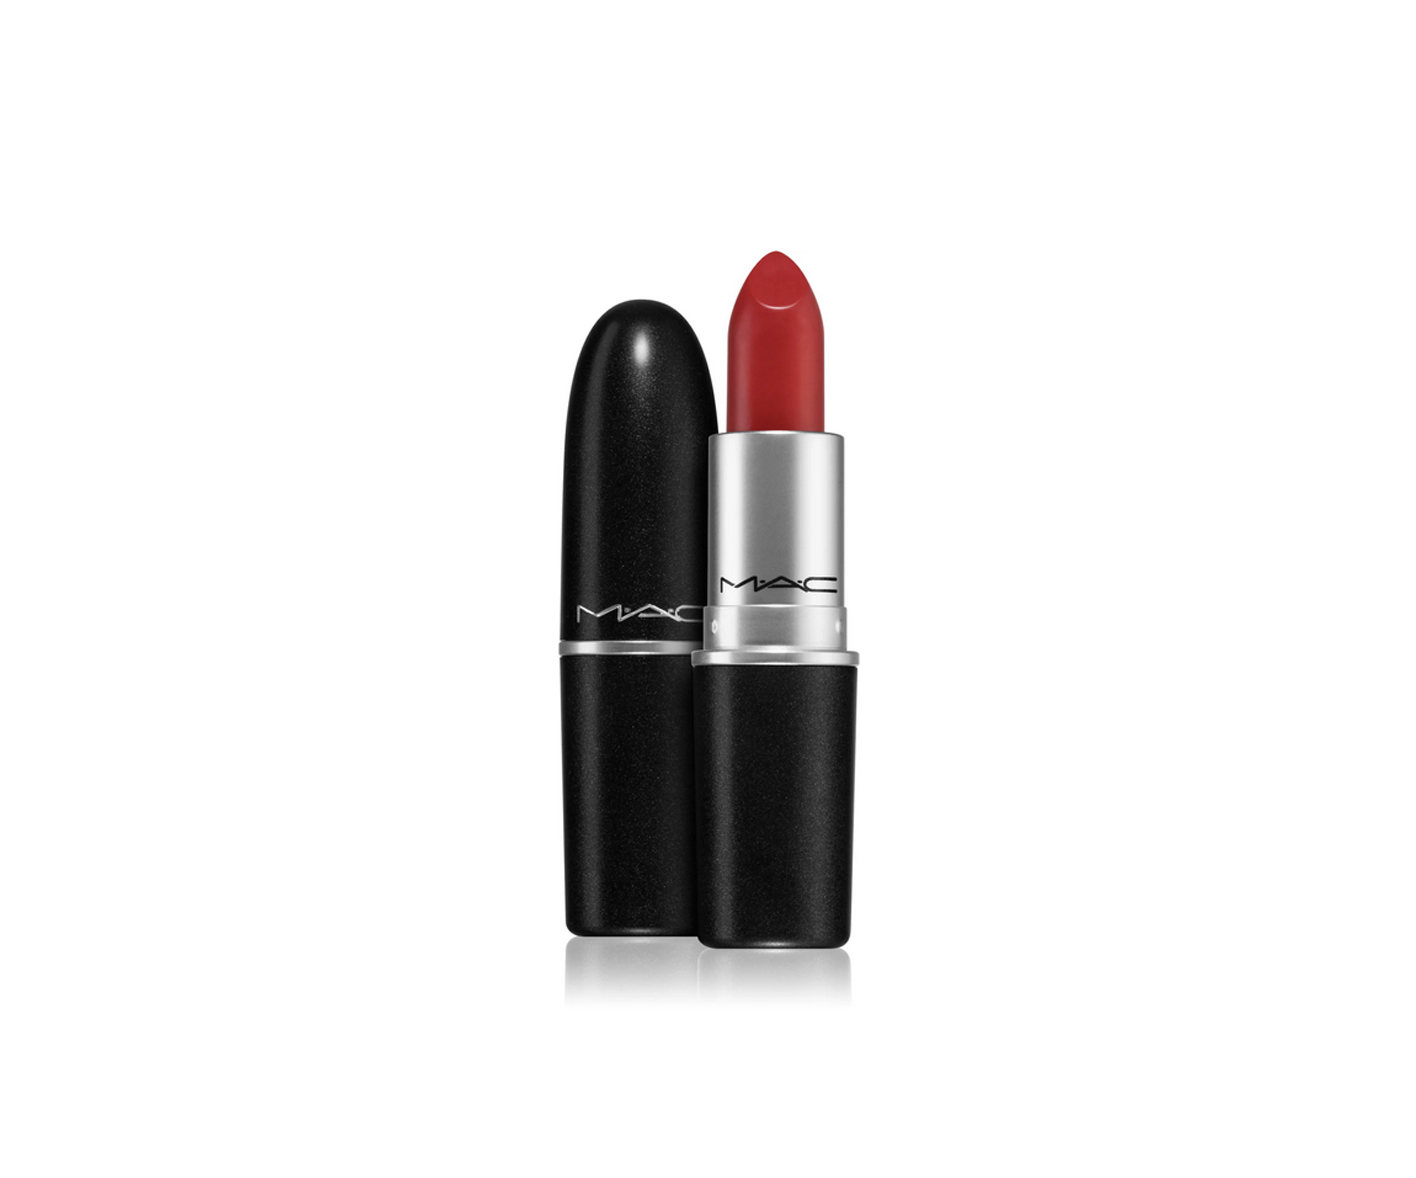  MAC Cosmetics, Retro Matte Lipstick, red lipstick